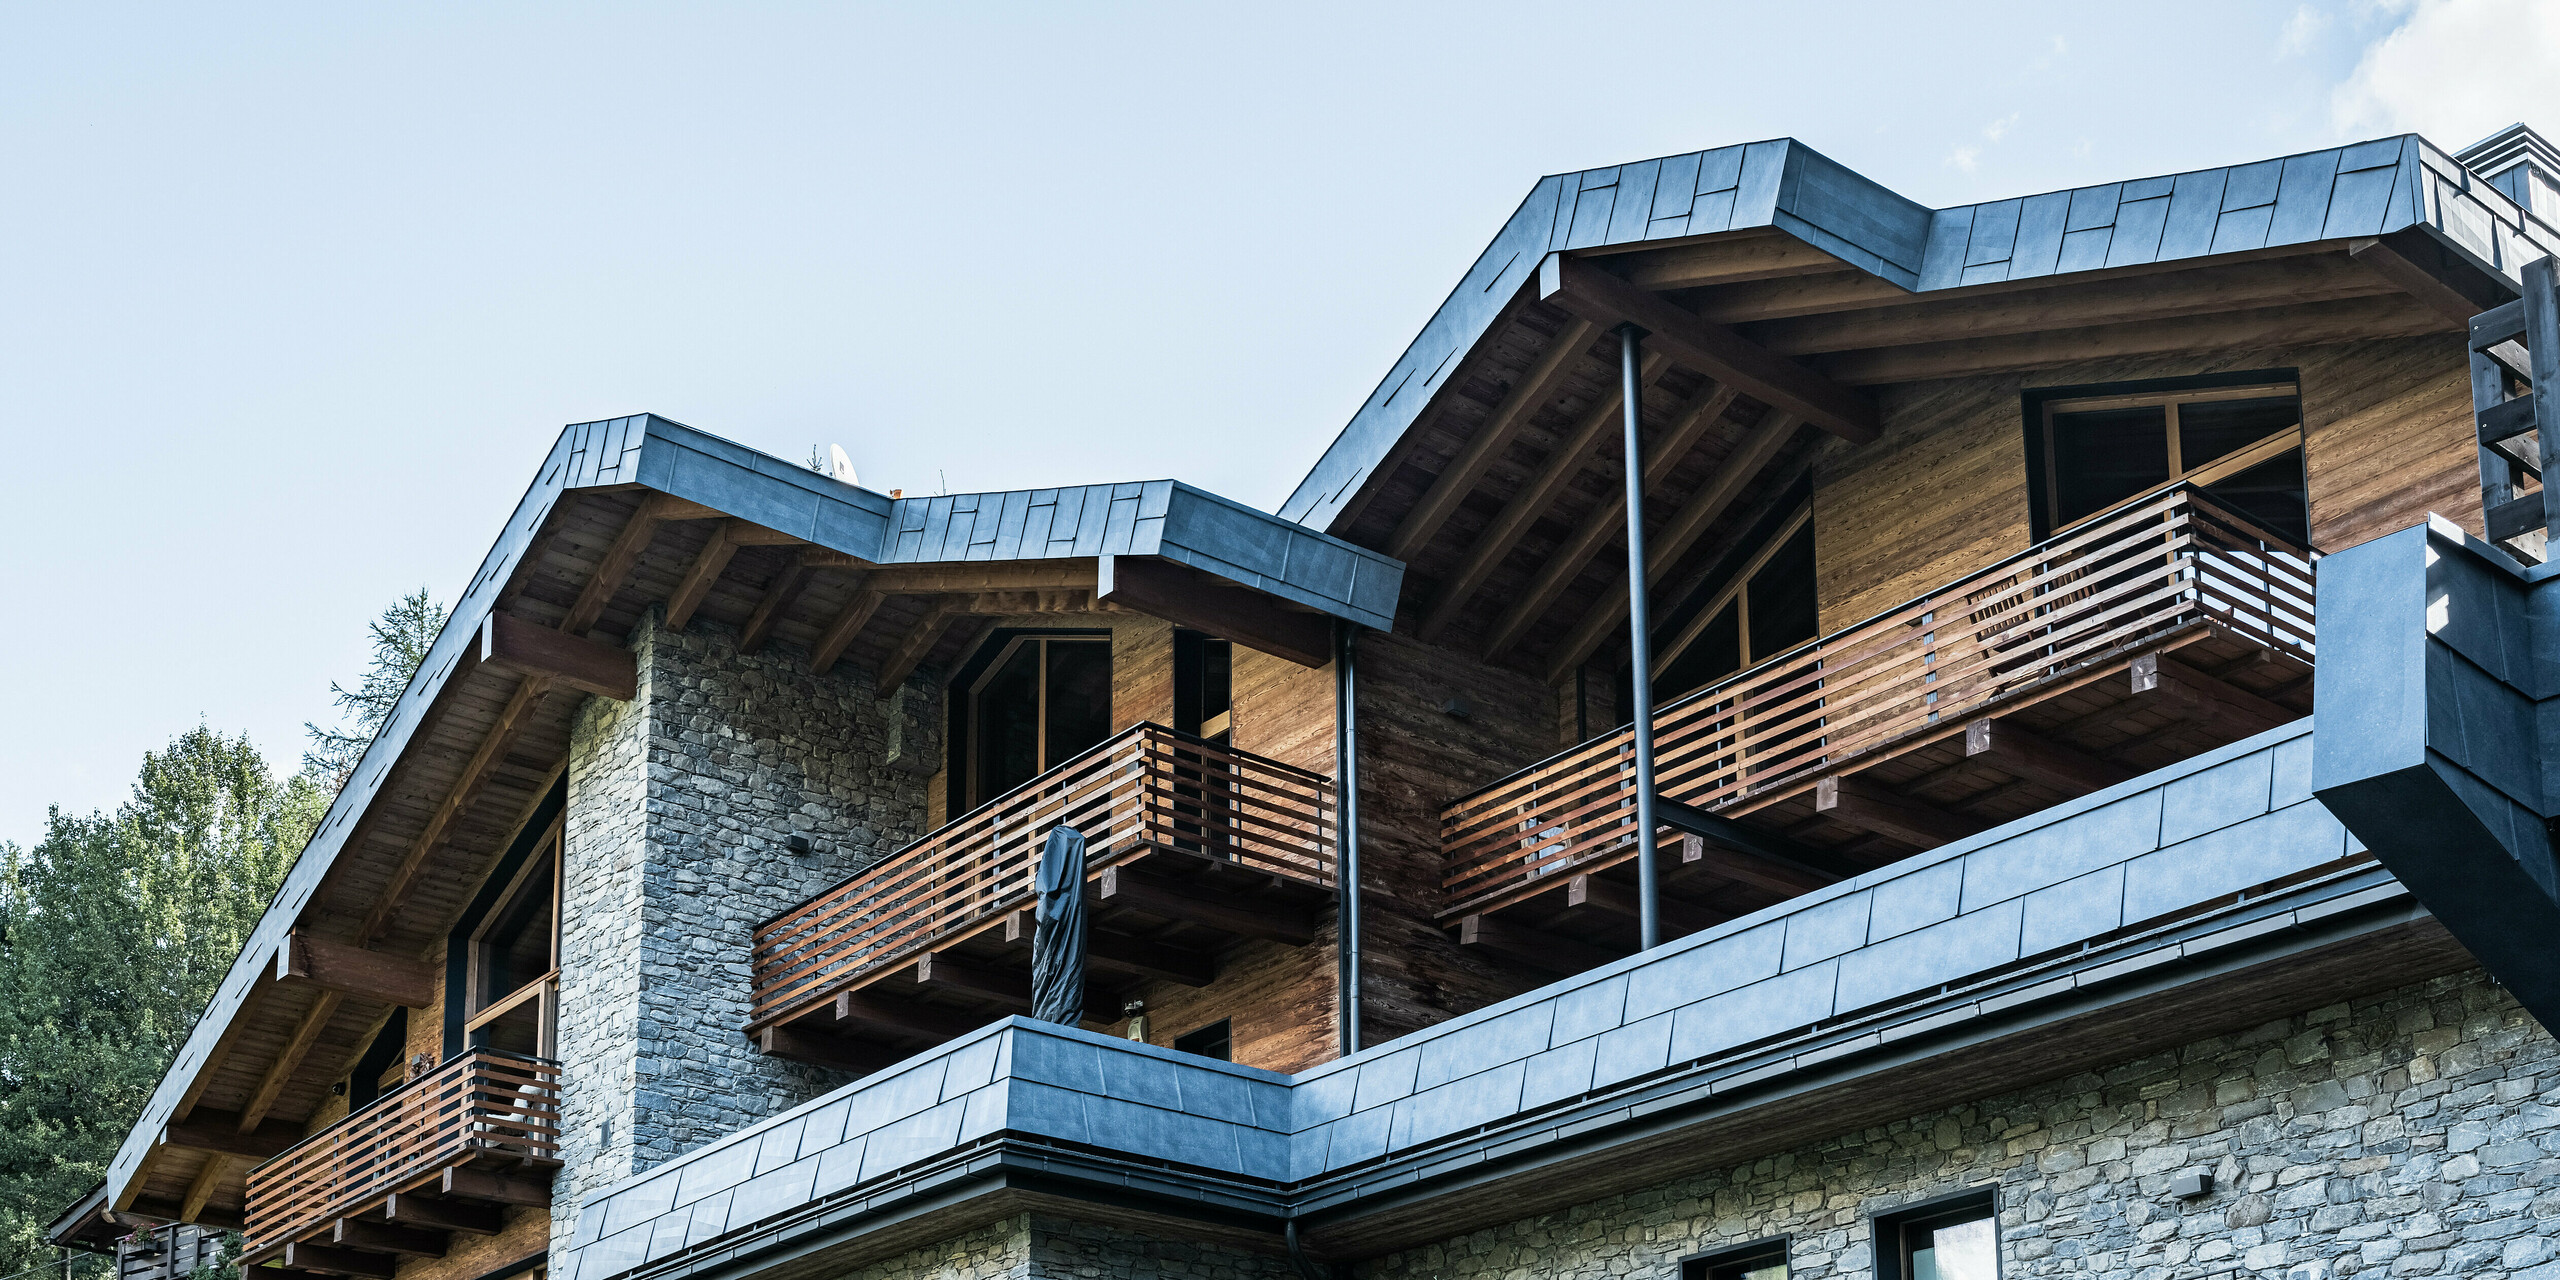 Detailní pohled na moderní bytový dům v Courmayeur s balkony a kombinací stěn z přírodního kamene a dřevěného obkladu. Výrazné střešní a fasádní panely z hliníku PREFA v barvě P.10 břidlicové zdůrazňují vysoce kvalitní architekturu. Konstrukce je rámována okolními borovicemi, které vytvářejí přirozenou a klidnou atmosféru a podtrhují harmonickou souhru moderních a tradičních stavebních prvků.